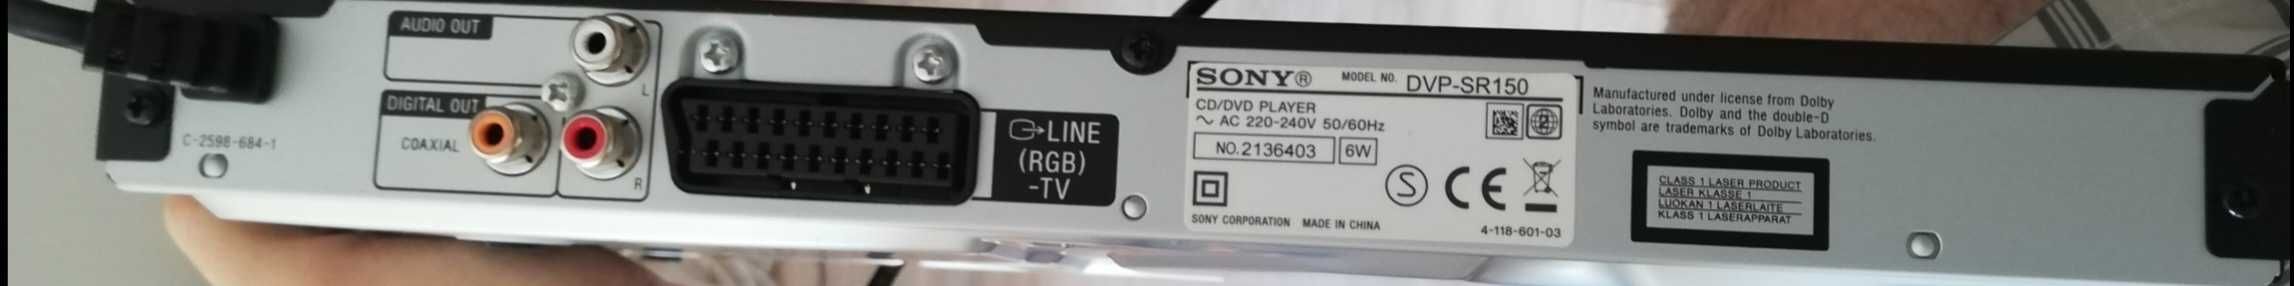 Sony odtwarzacz CD/DVD/MP3/xvid/MPEG 4 nowy+przewód nowy scart